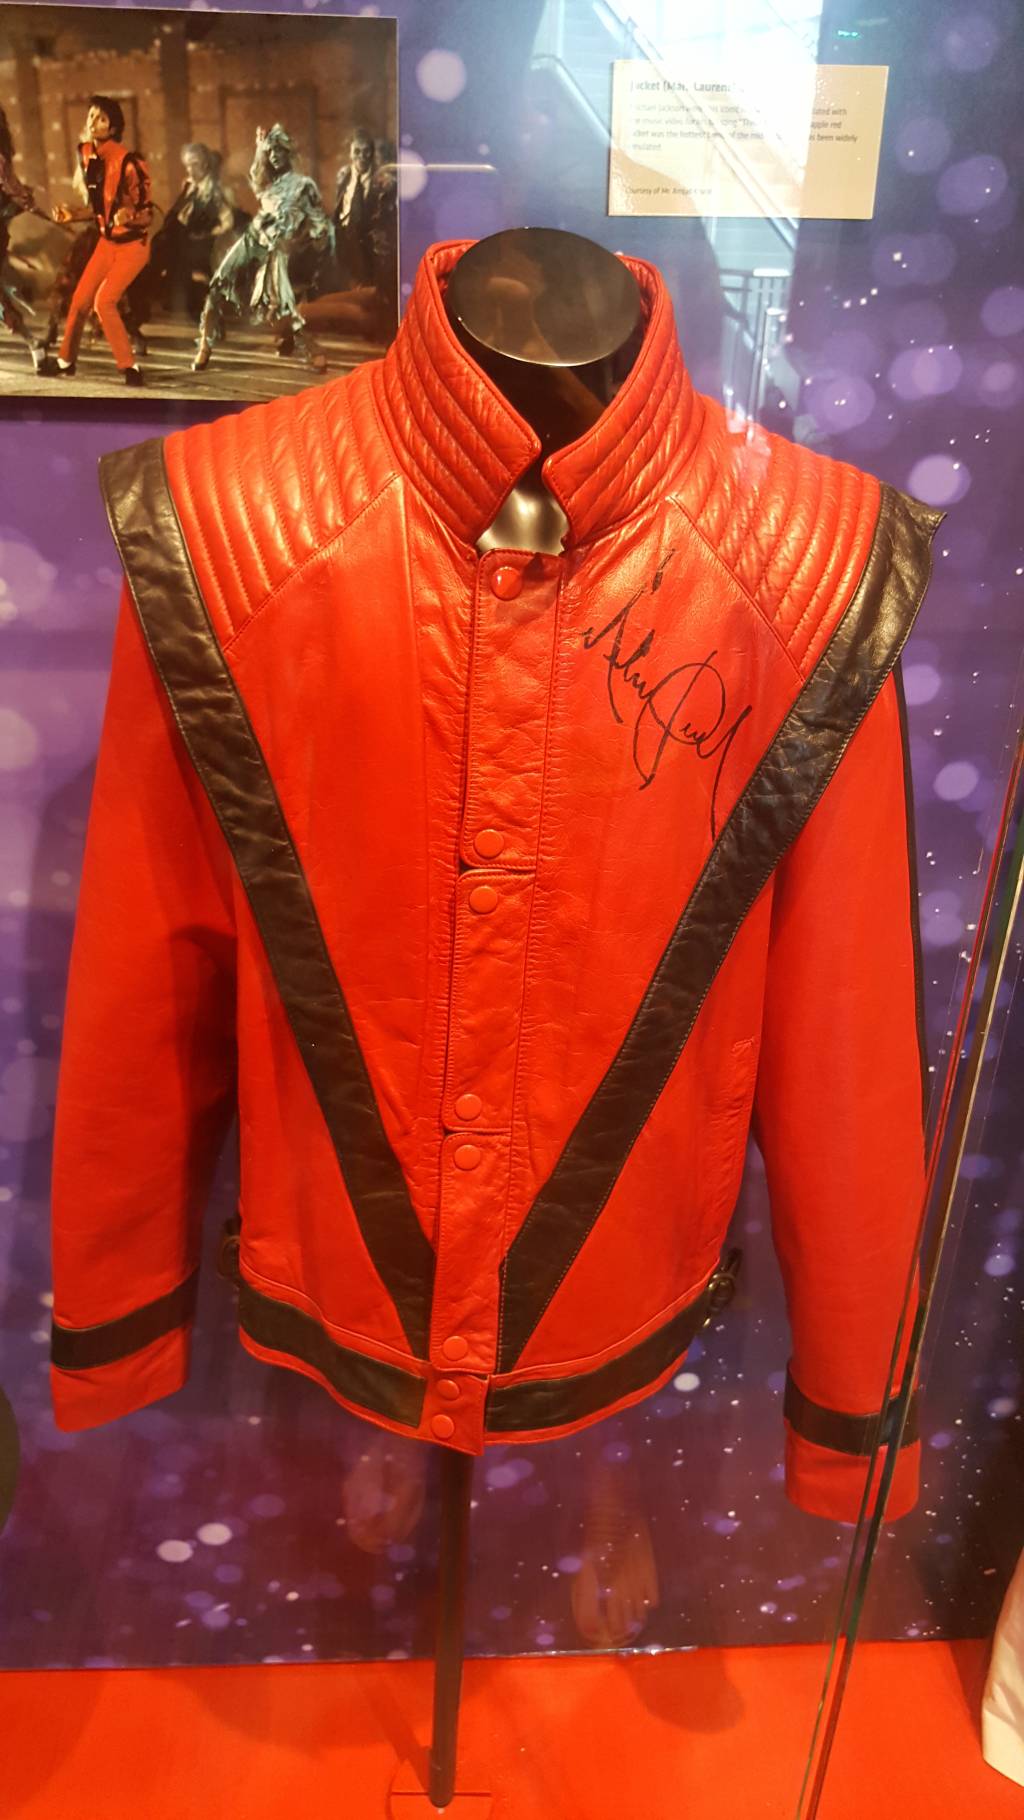 A jaqueta que o Michael Jackson usou em Thriller: uma das joias do Gramy Museum